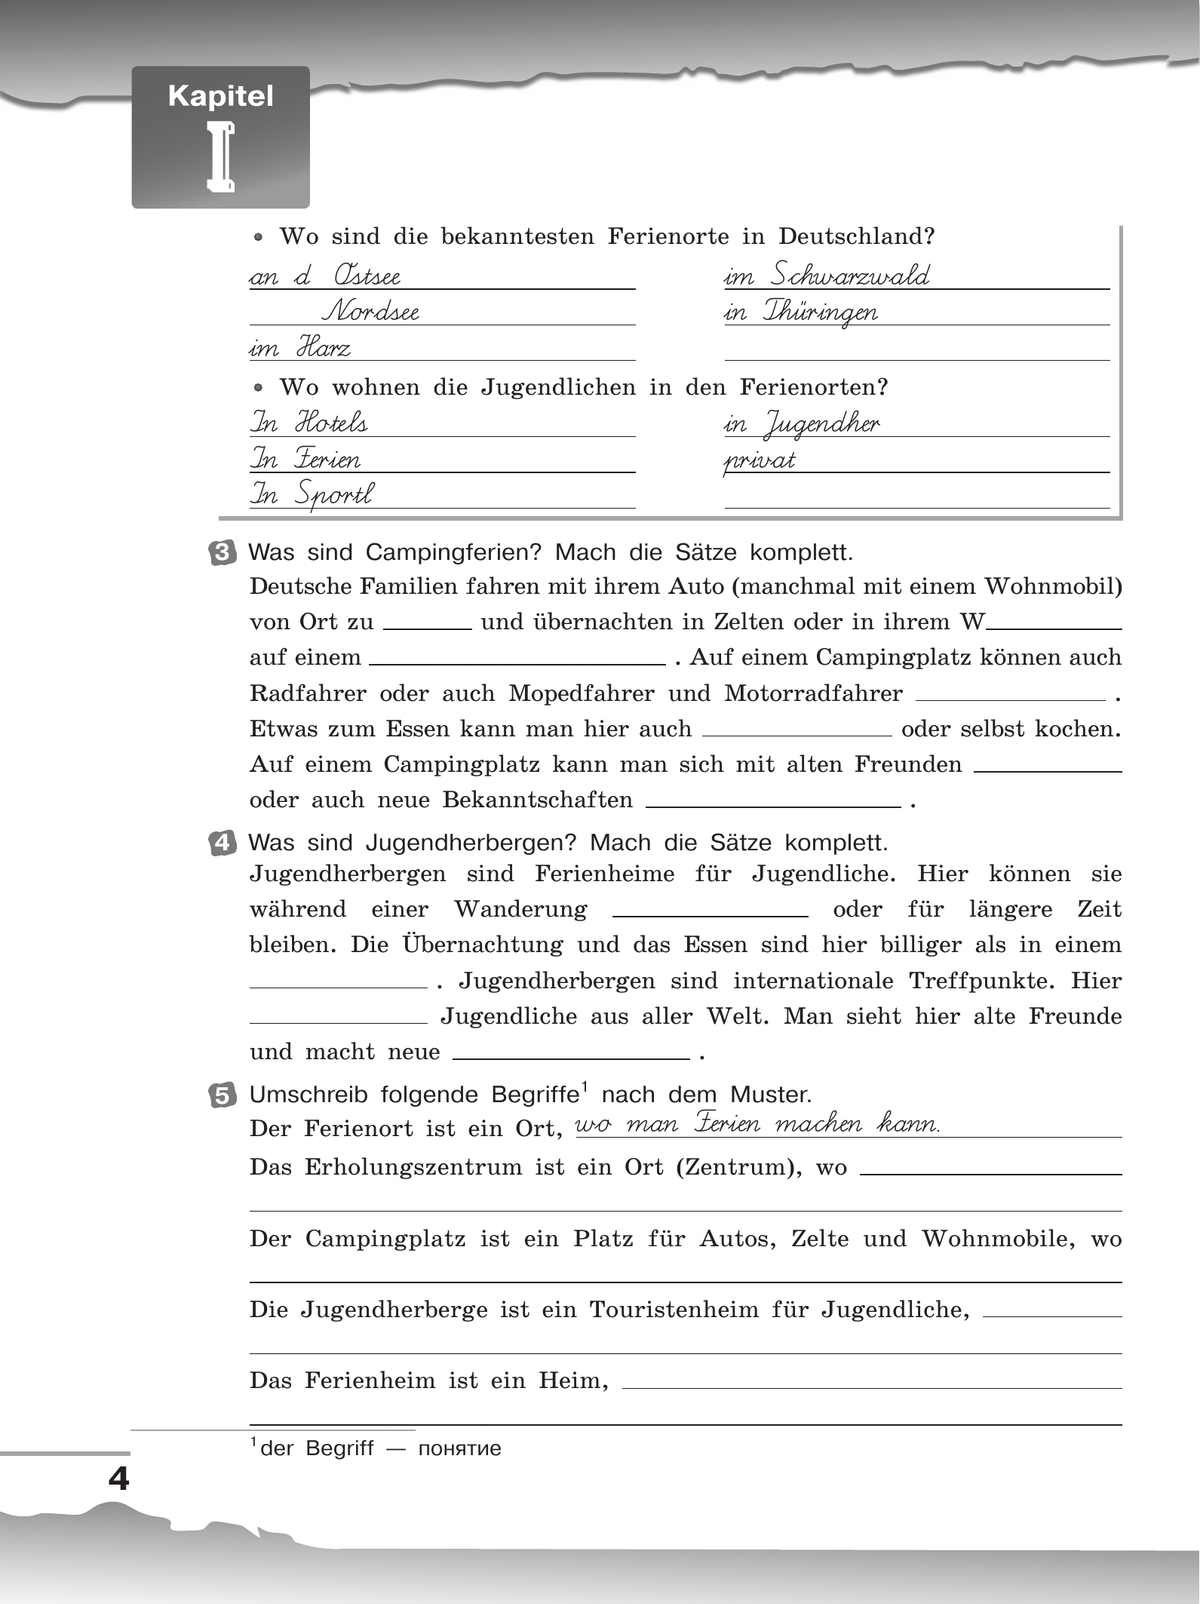 Немецкий язык. Рабочая тетрадь. 8 класс 6